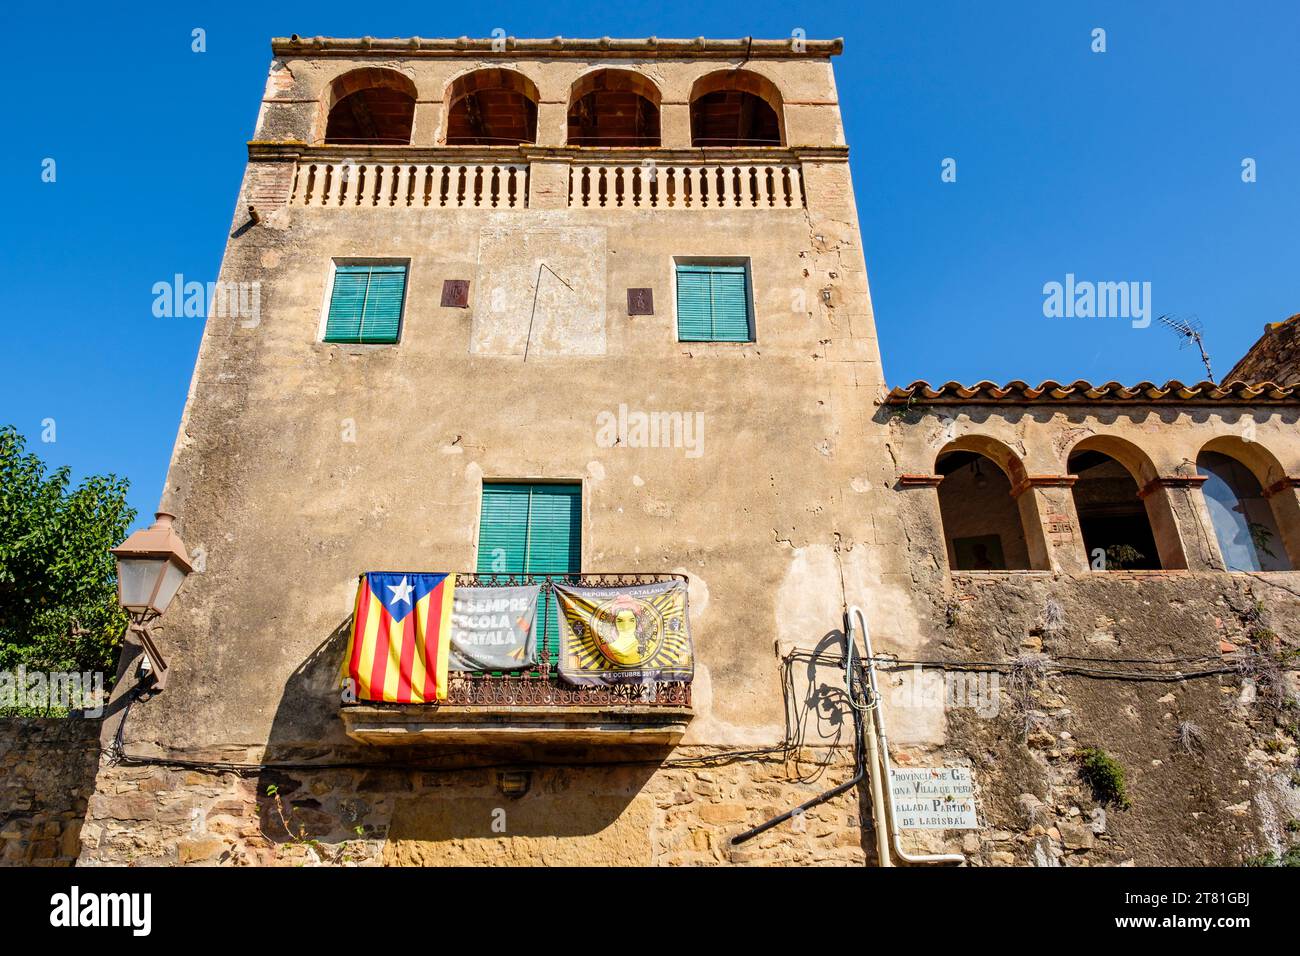 Stelada catalana bandiera non ufficiale e bandiera che promuove l'indipendenza della Catalogna appesa da un balcone nel villaggio di Pals, Catalogna, Spagna Foto Stock